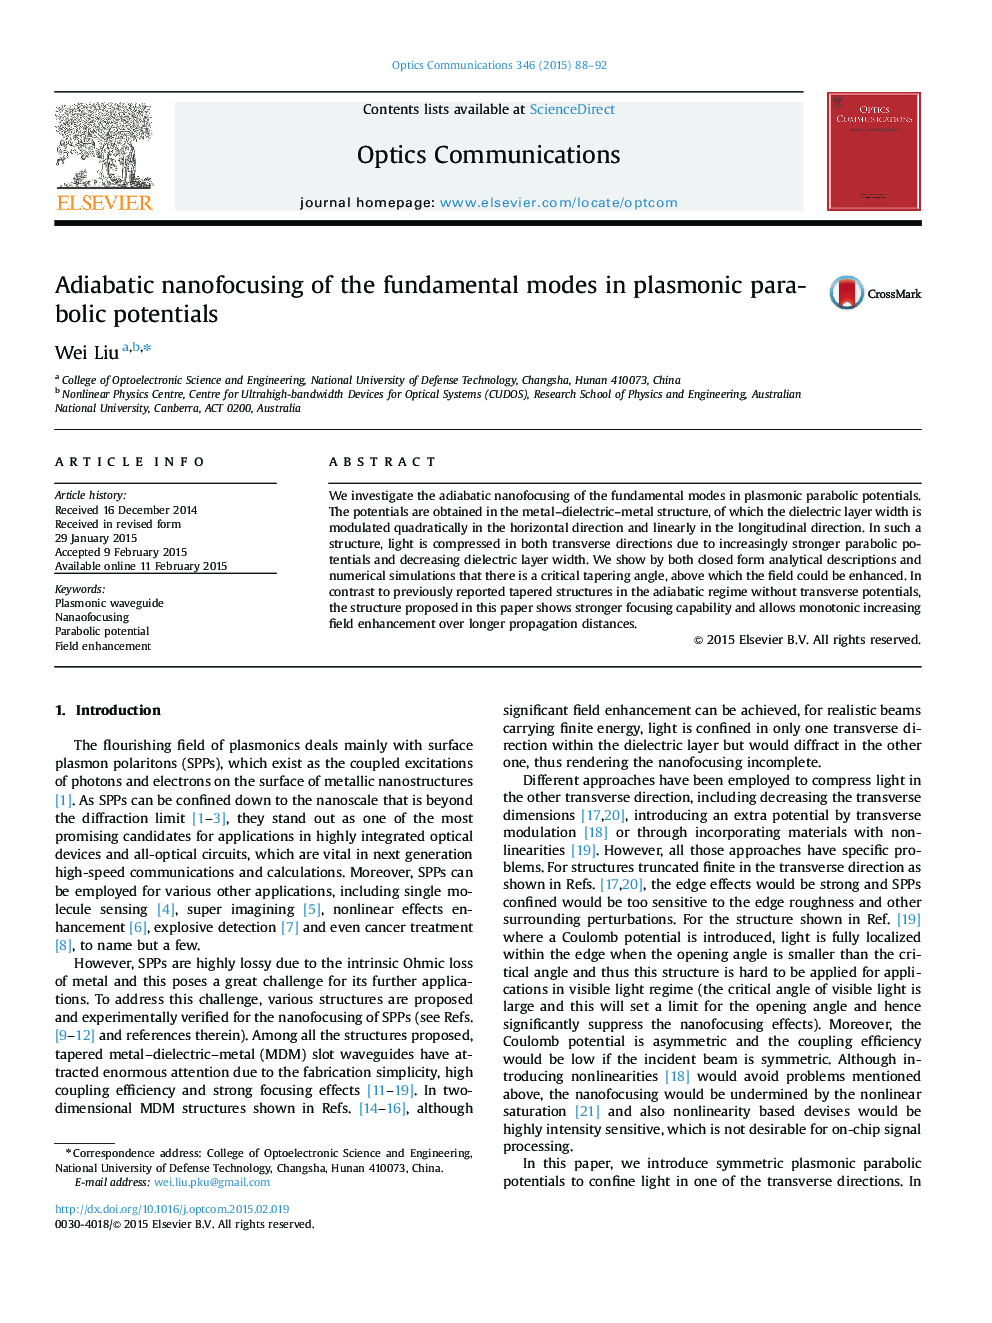 نانو فوکوس کردن آدایاباتیک حالت های اساسی در پتانسیل های پارابولون پلاسمونی 